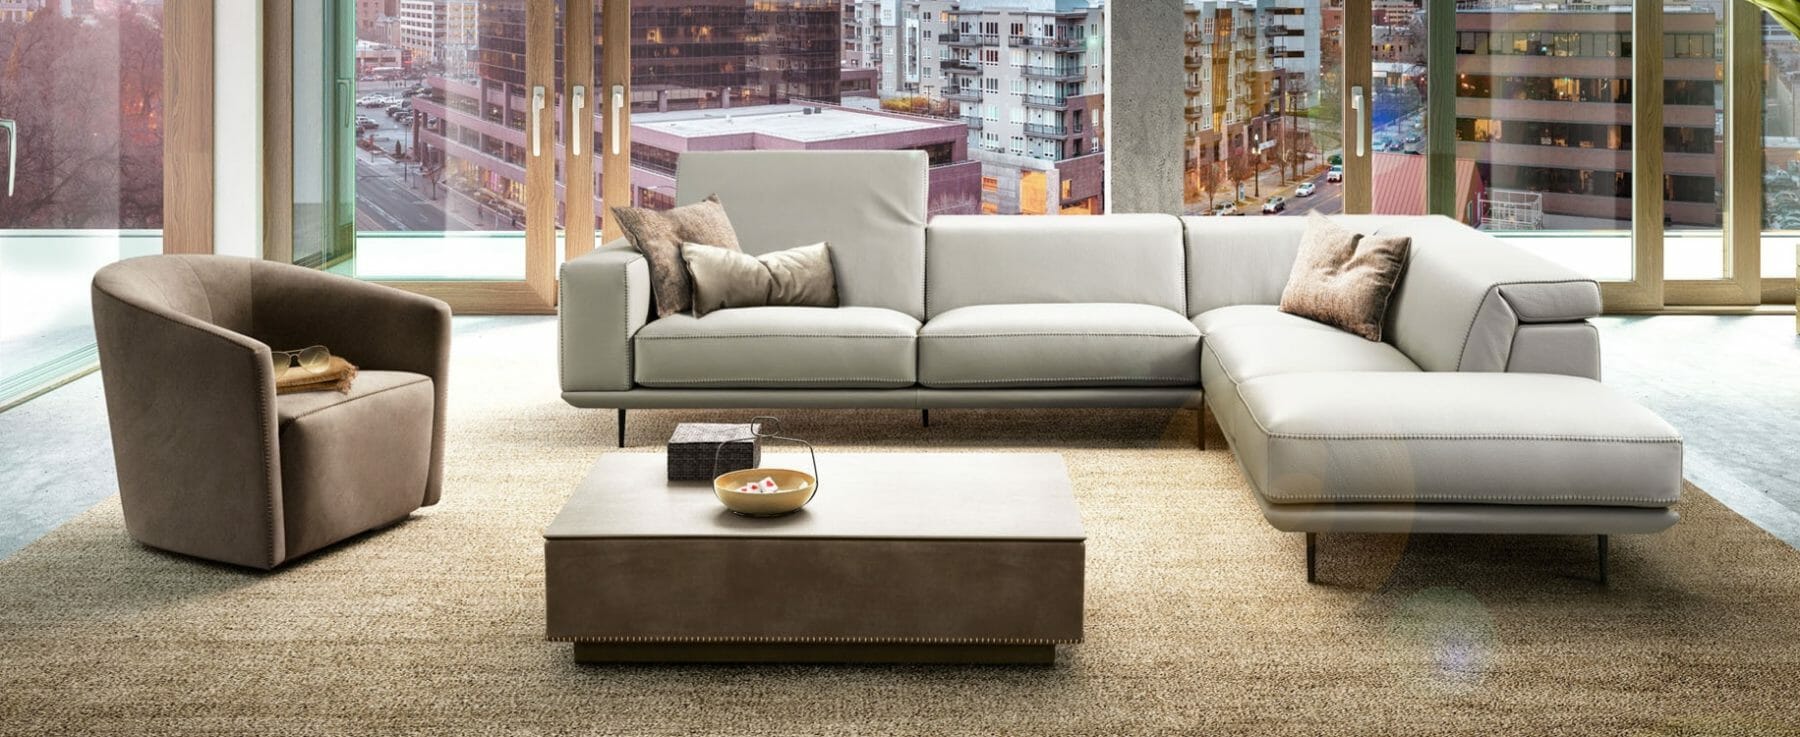 Living room design by e-design